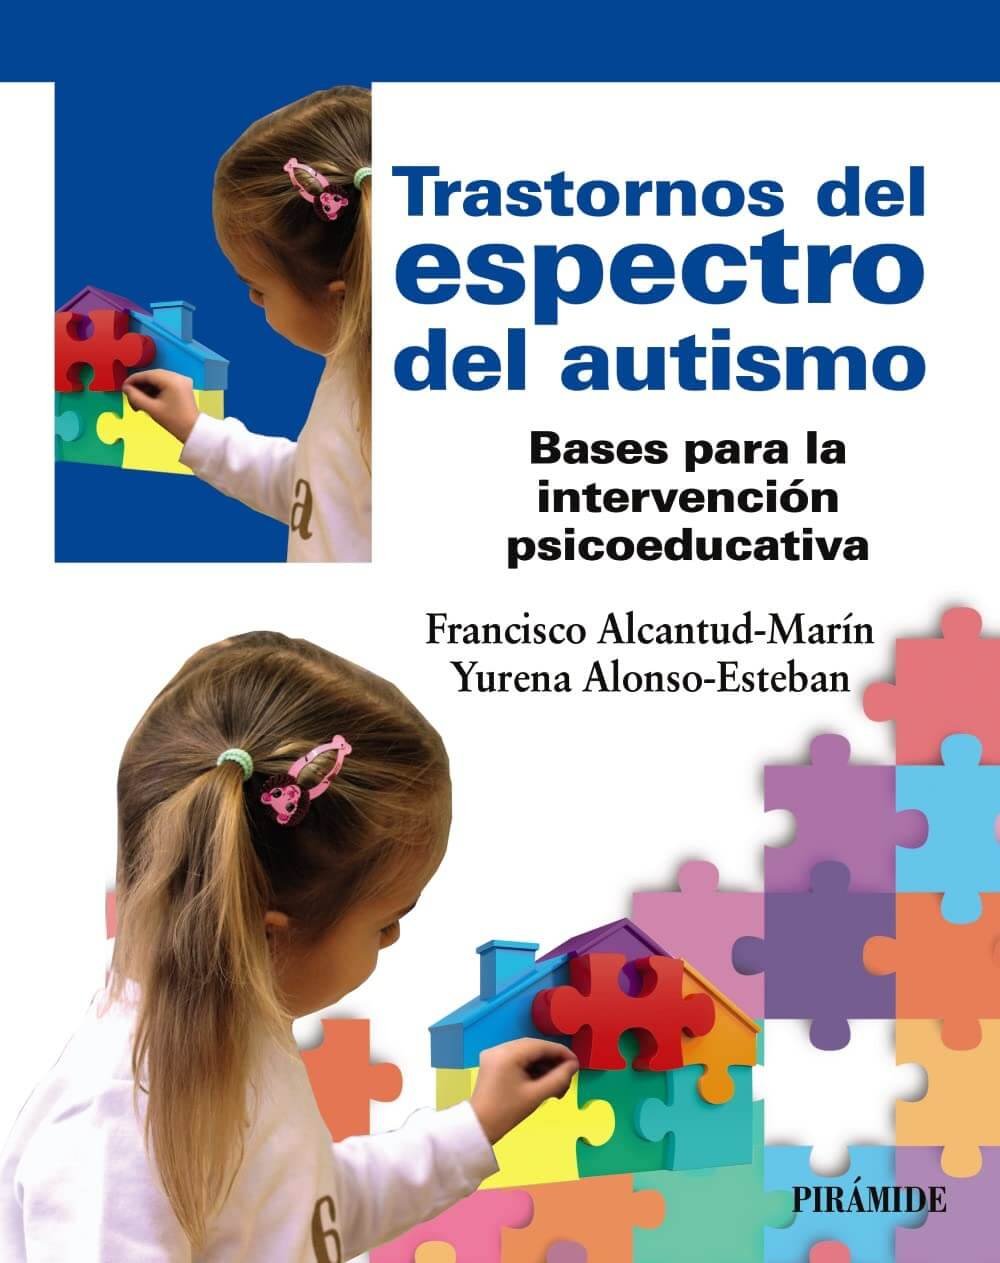 Libro trastorno del espectro del autismo, bases de intervención psicoeducativa